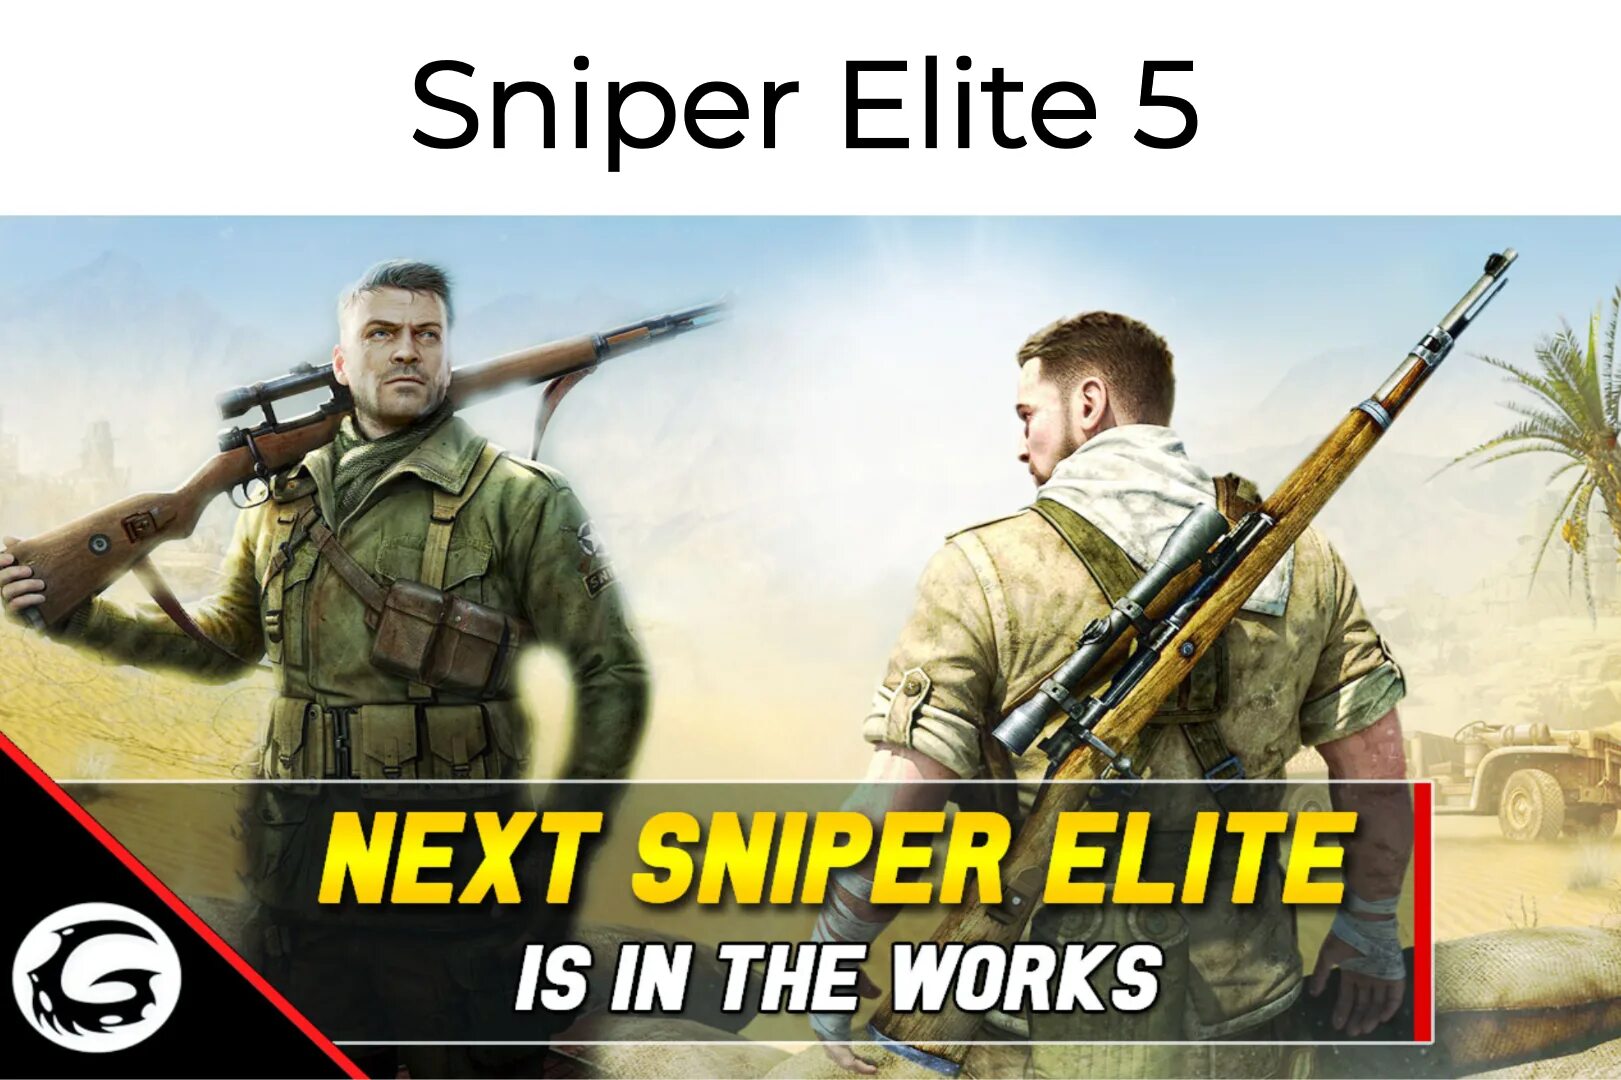 Sniper elite 5 стим. Снайпер Элит 5. Год выхода Sniper Elite 5. Соколиный глаз Sniper Elite. Снайпер Элит 5 обзор.